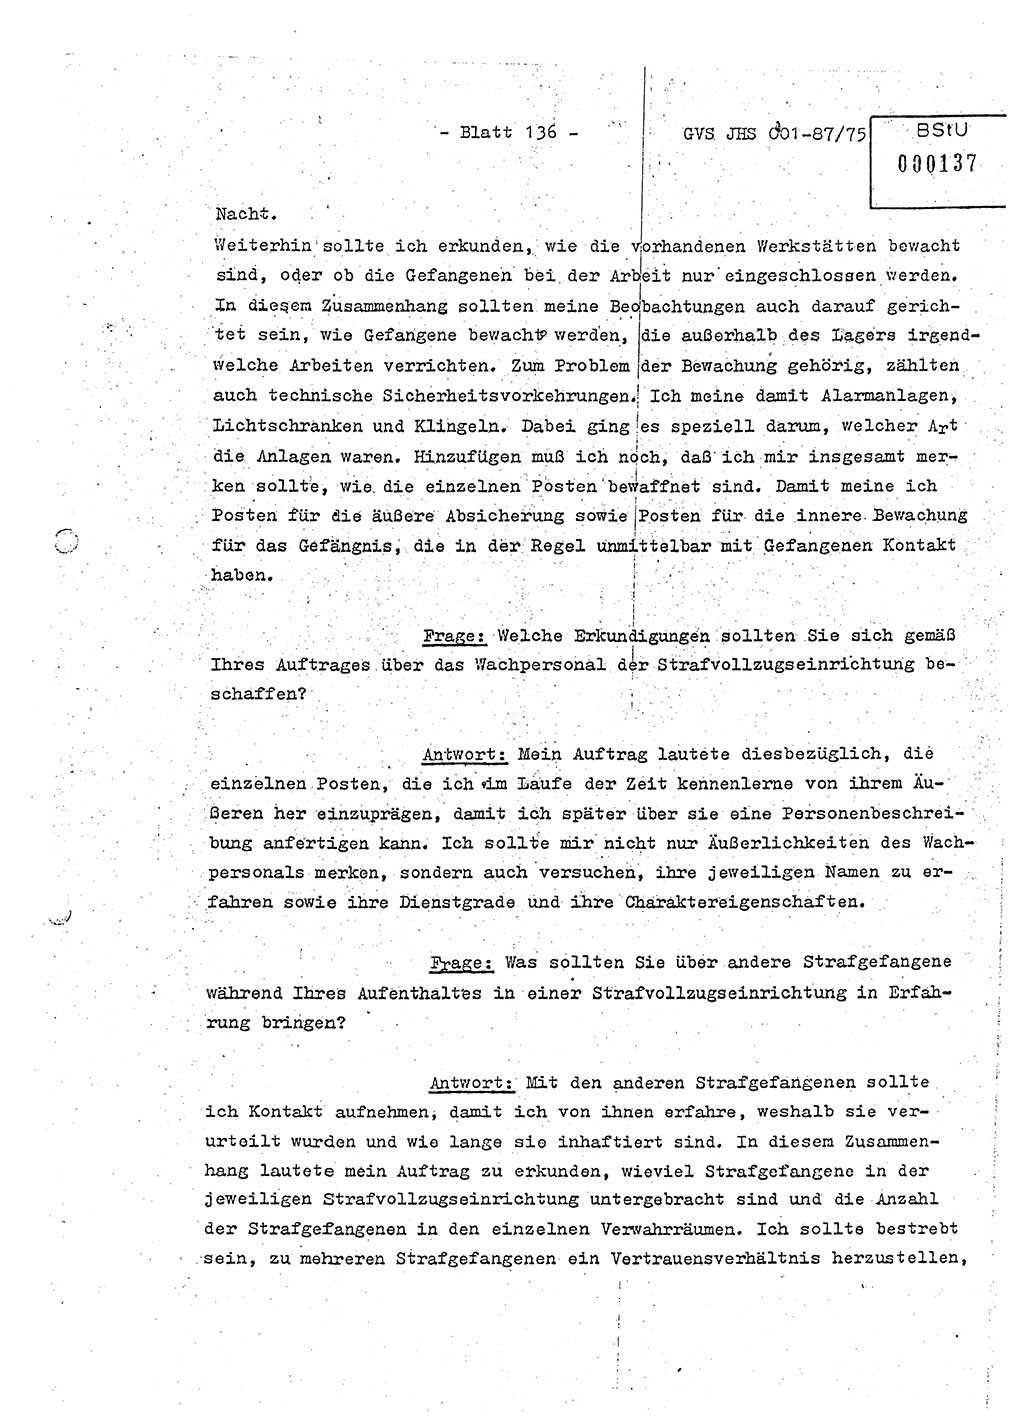 Diplomarbeit Hauptmann Volkmar Heinz (Abt. ⅩⅣ), Oberleutnant Lothar Rüdiger (BV Lpz. Abt. Ⅺ), Ministerium für Staatssicherheit (MfS) [Deutsche Demokratische Republik (DDR)], Juristische Hochschule (JHS), Geheime Verschlußsache (GVS) o001-87/75, Potsdam 1975, Seite 136 (Dipl.-Arb. MfS DDR JHS GVS o001-87/75 1975, S. 136)